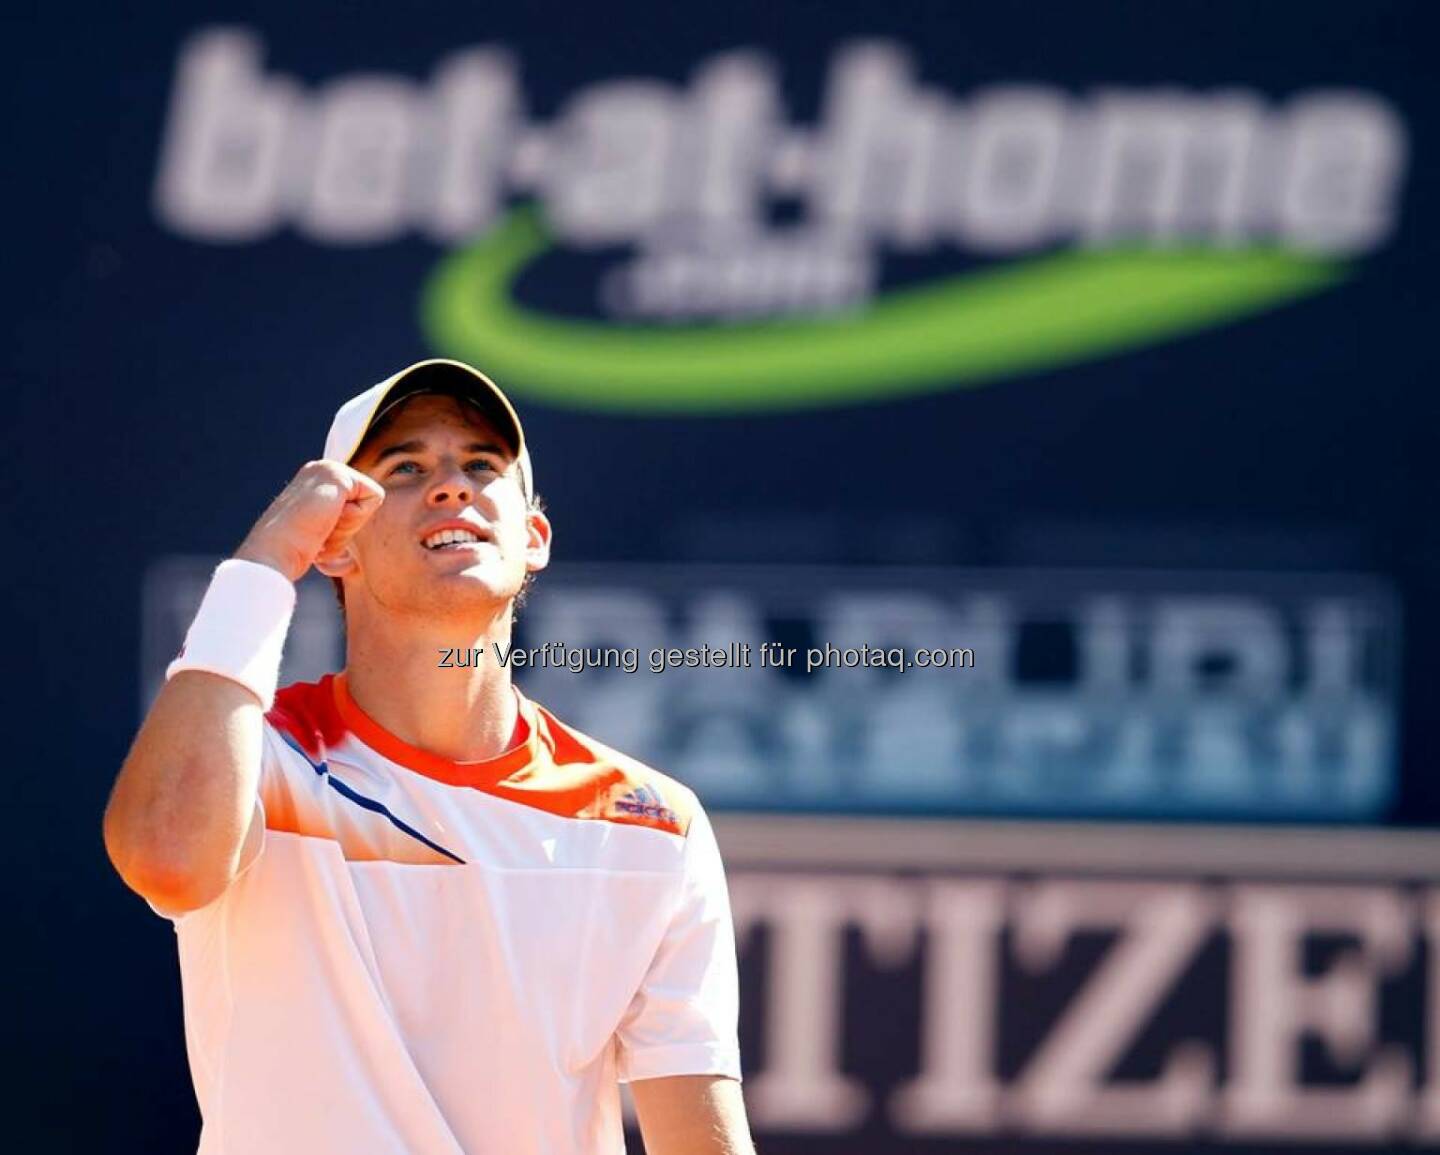 bet-at-home: Gratulation an Dominic Thiem zum Einzug in die Top 100 der Tennis-Weltrangliste (bet-at-home auf Facebook)